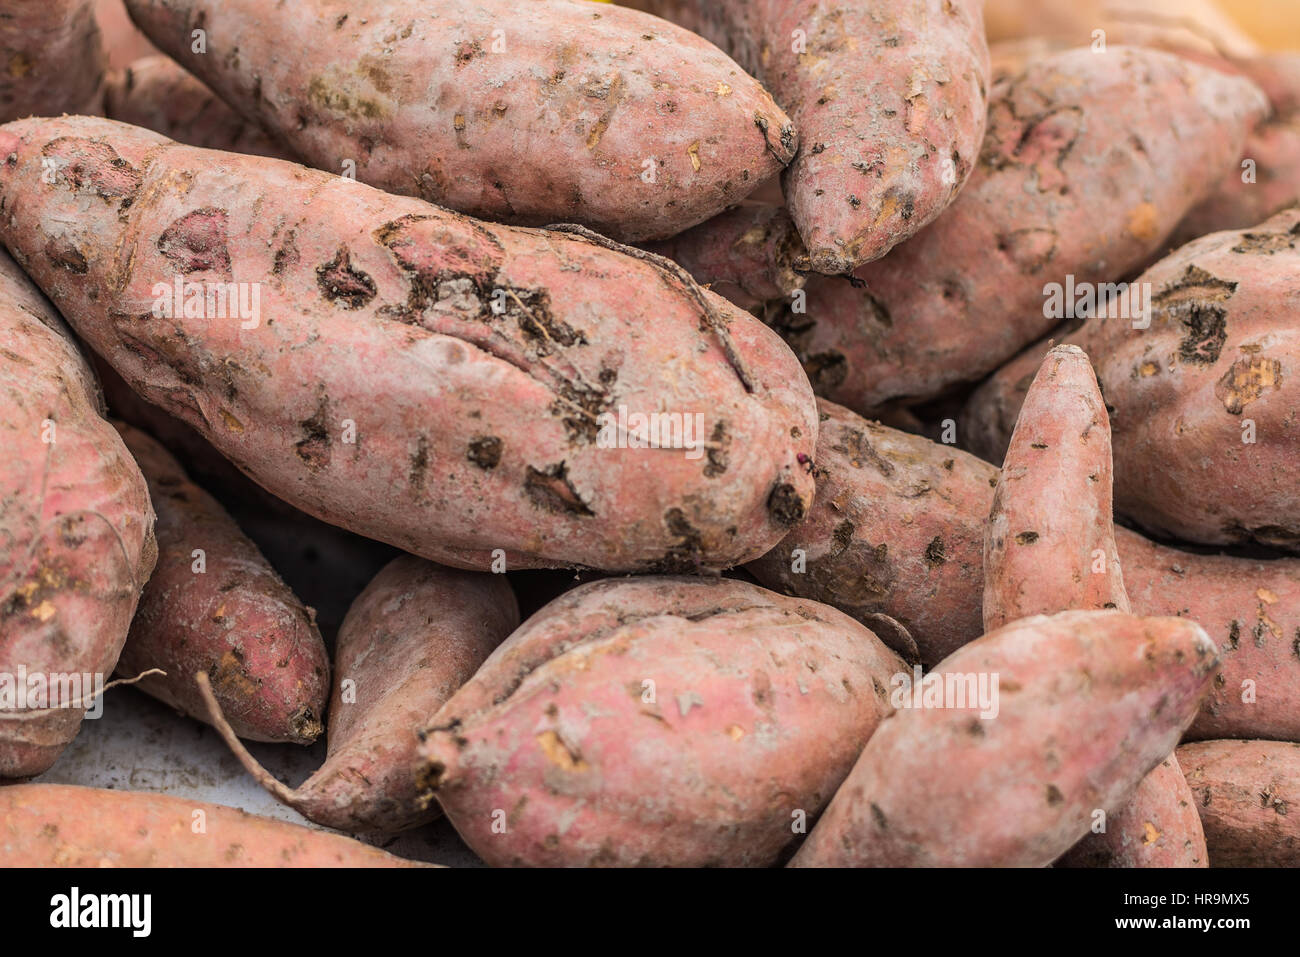 Gesunde und frische süße Potatpos Batatas auf einem lokalen Markt Stockfoto